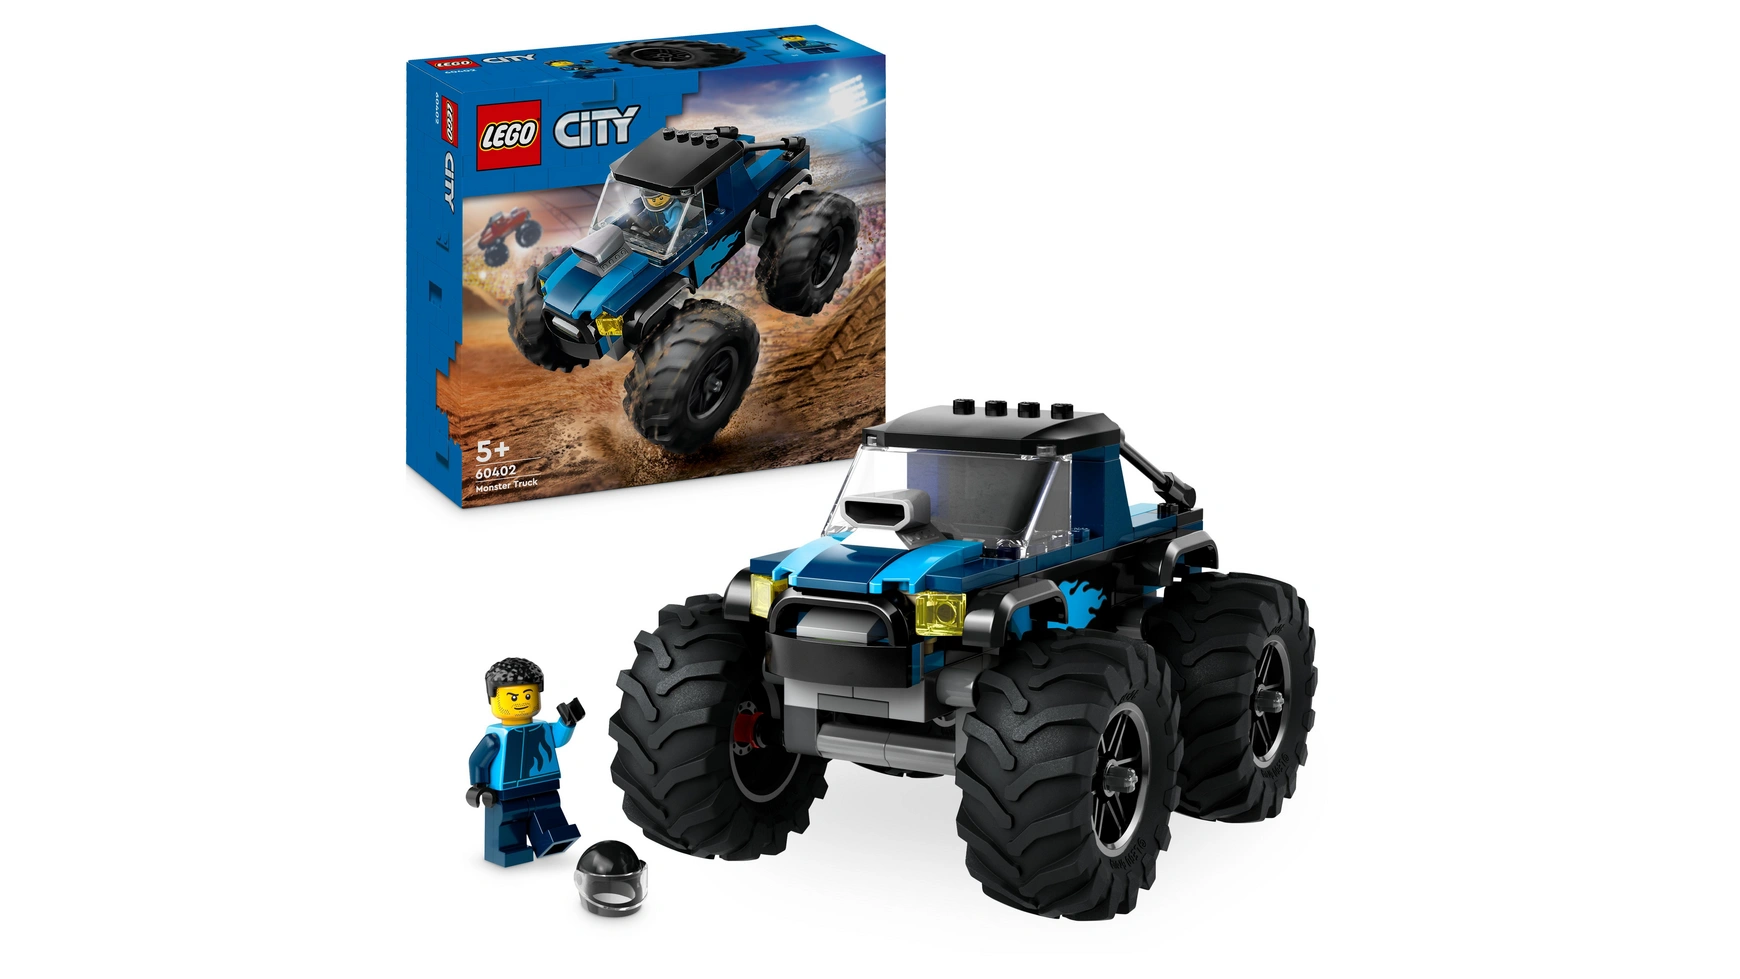 Lego City Синий монстр-трак цена и фото